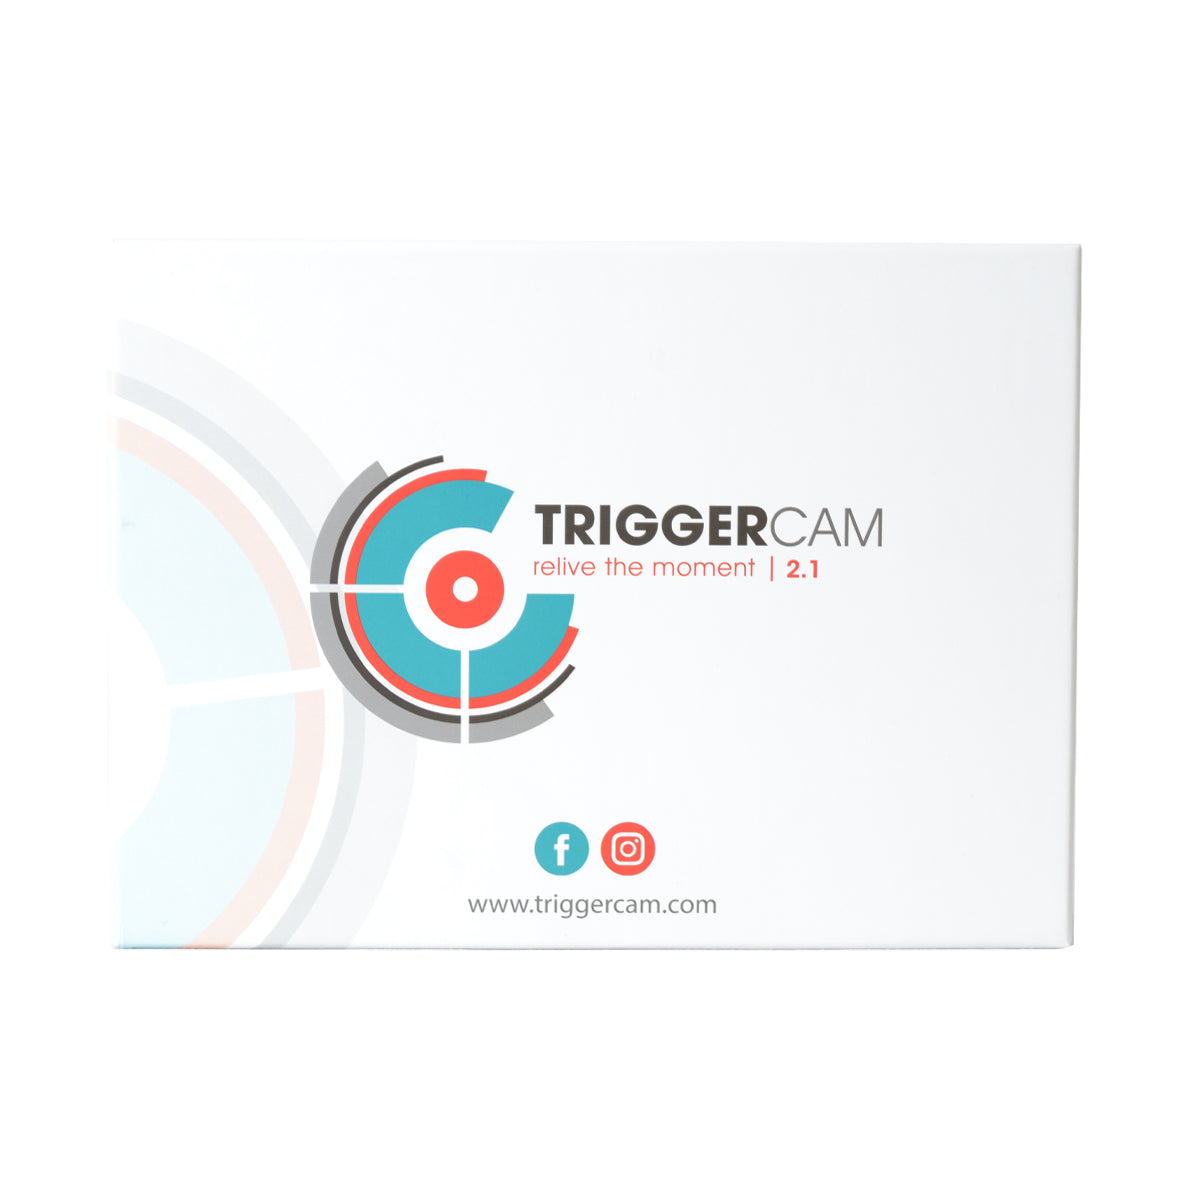 TRIGGERCAM 2.1 – TriggerCam